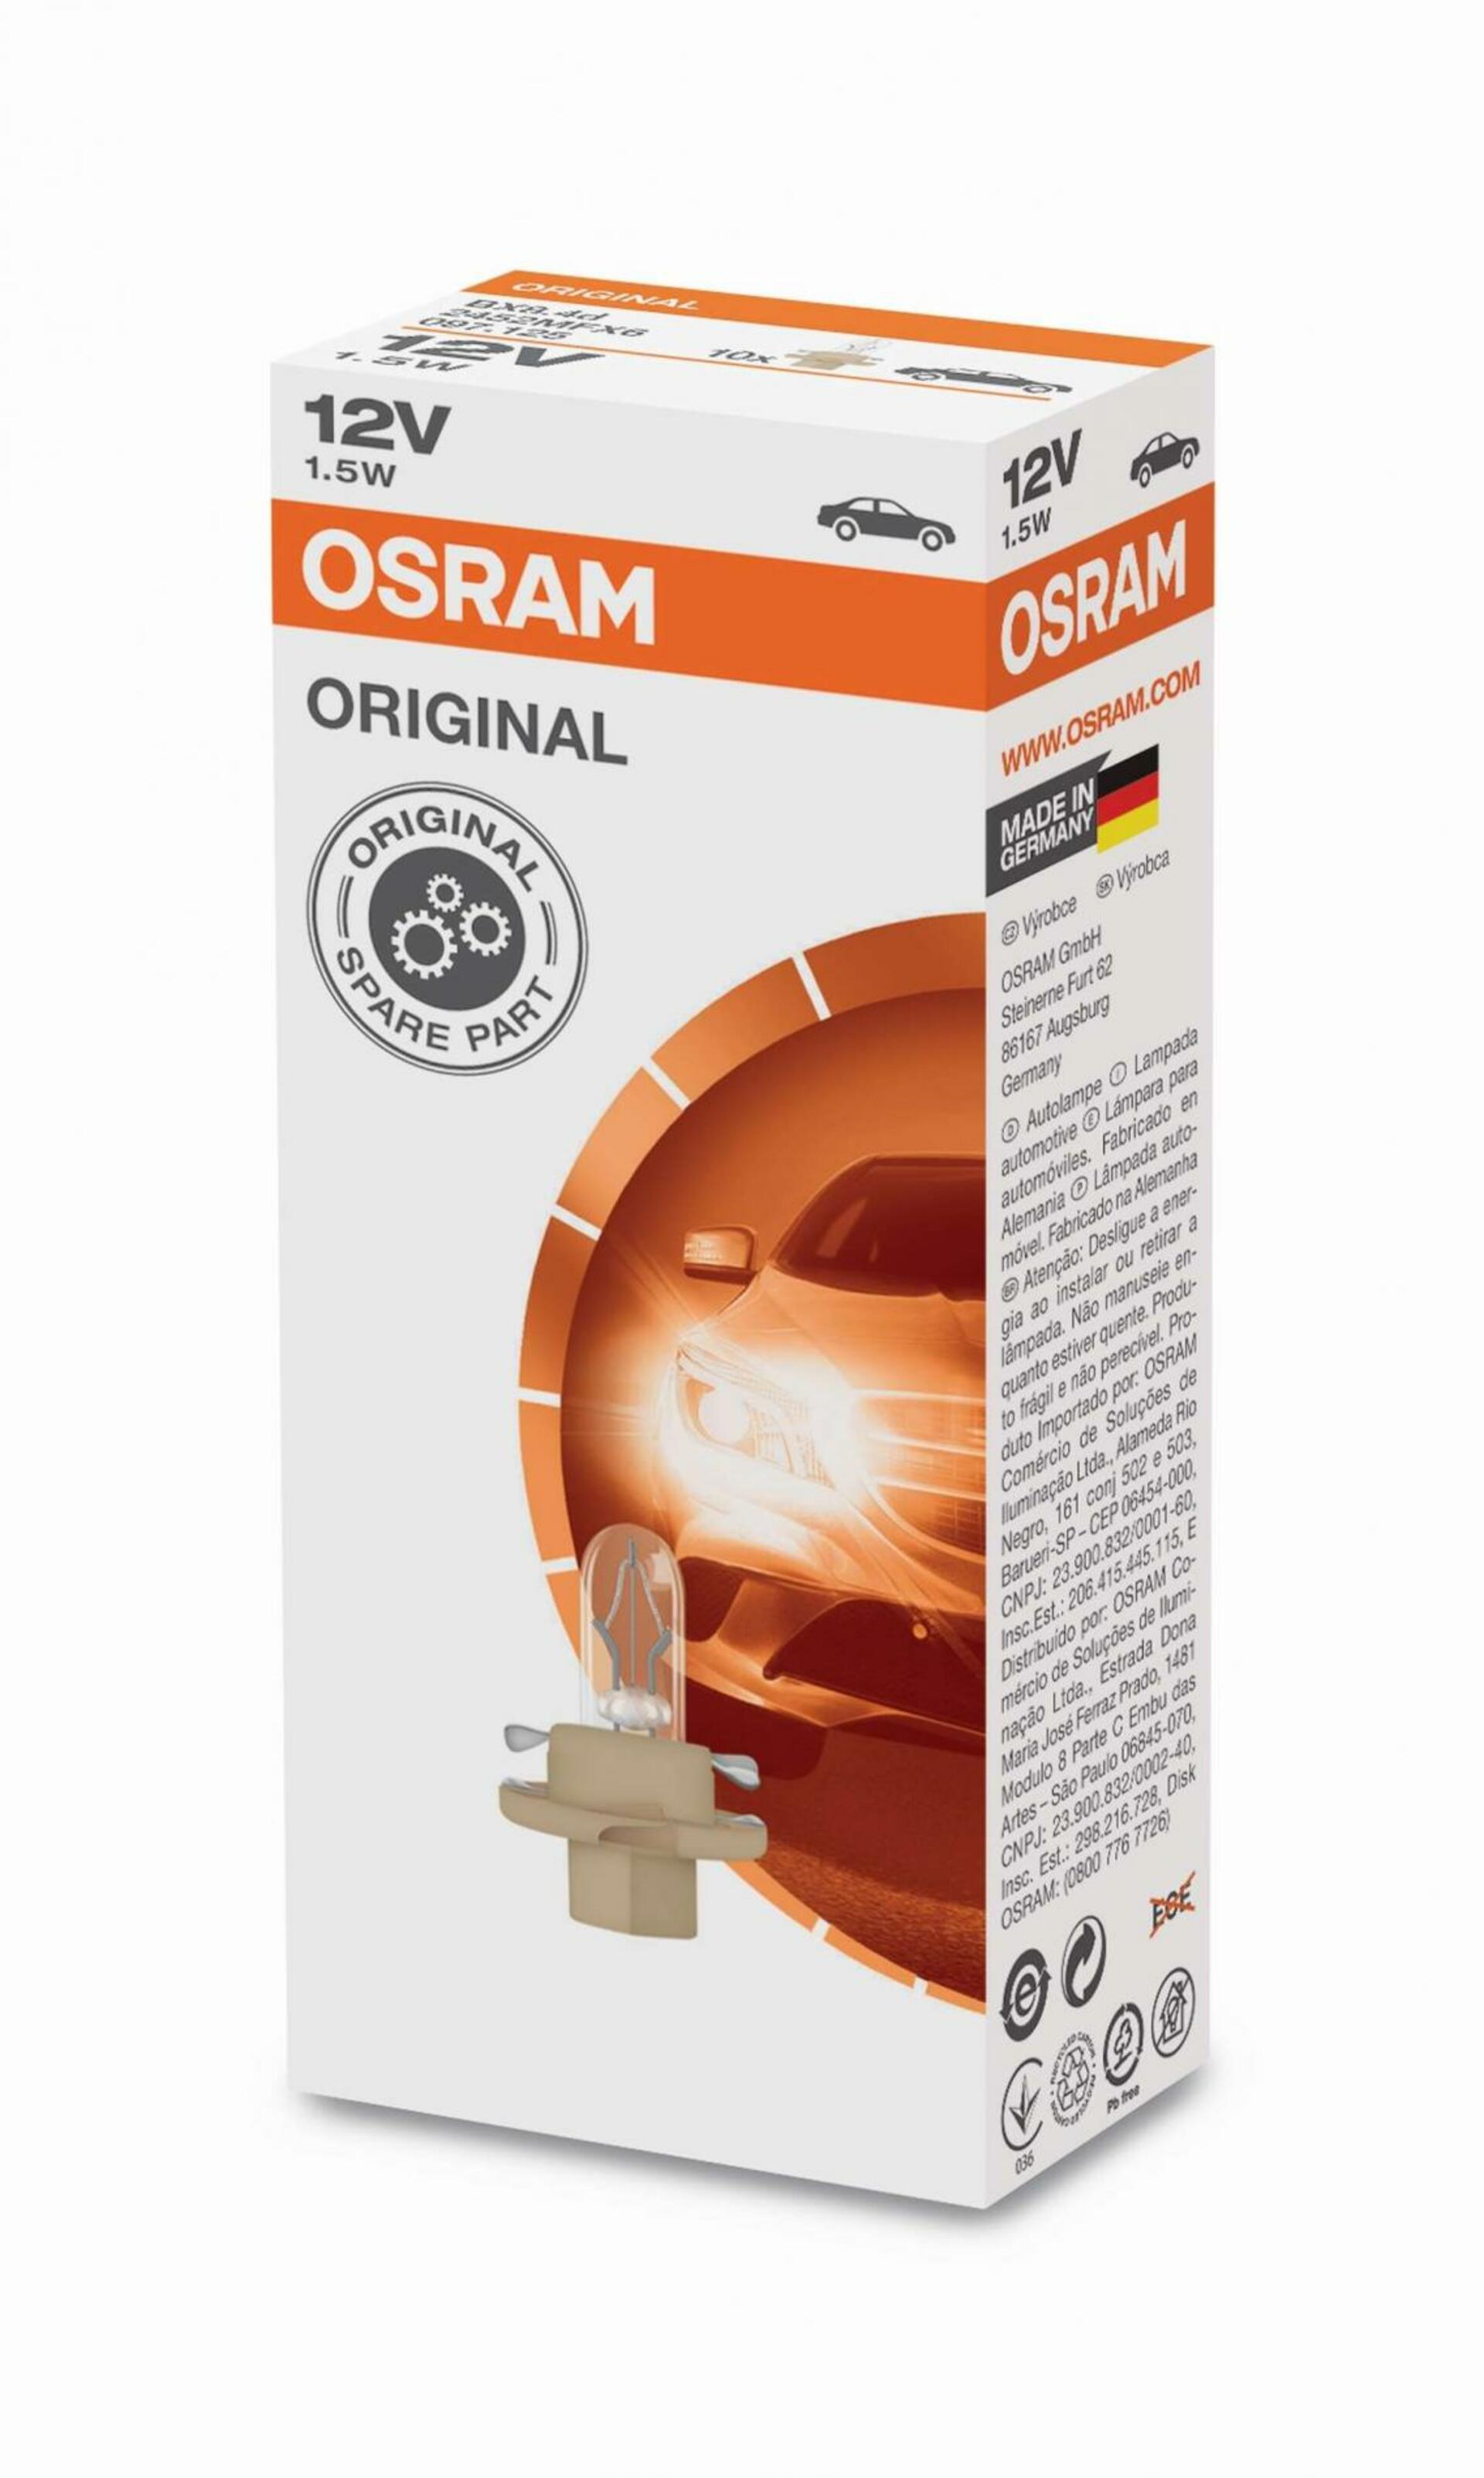 OSRAM 2452MFX6 1,5W 12V